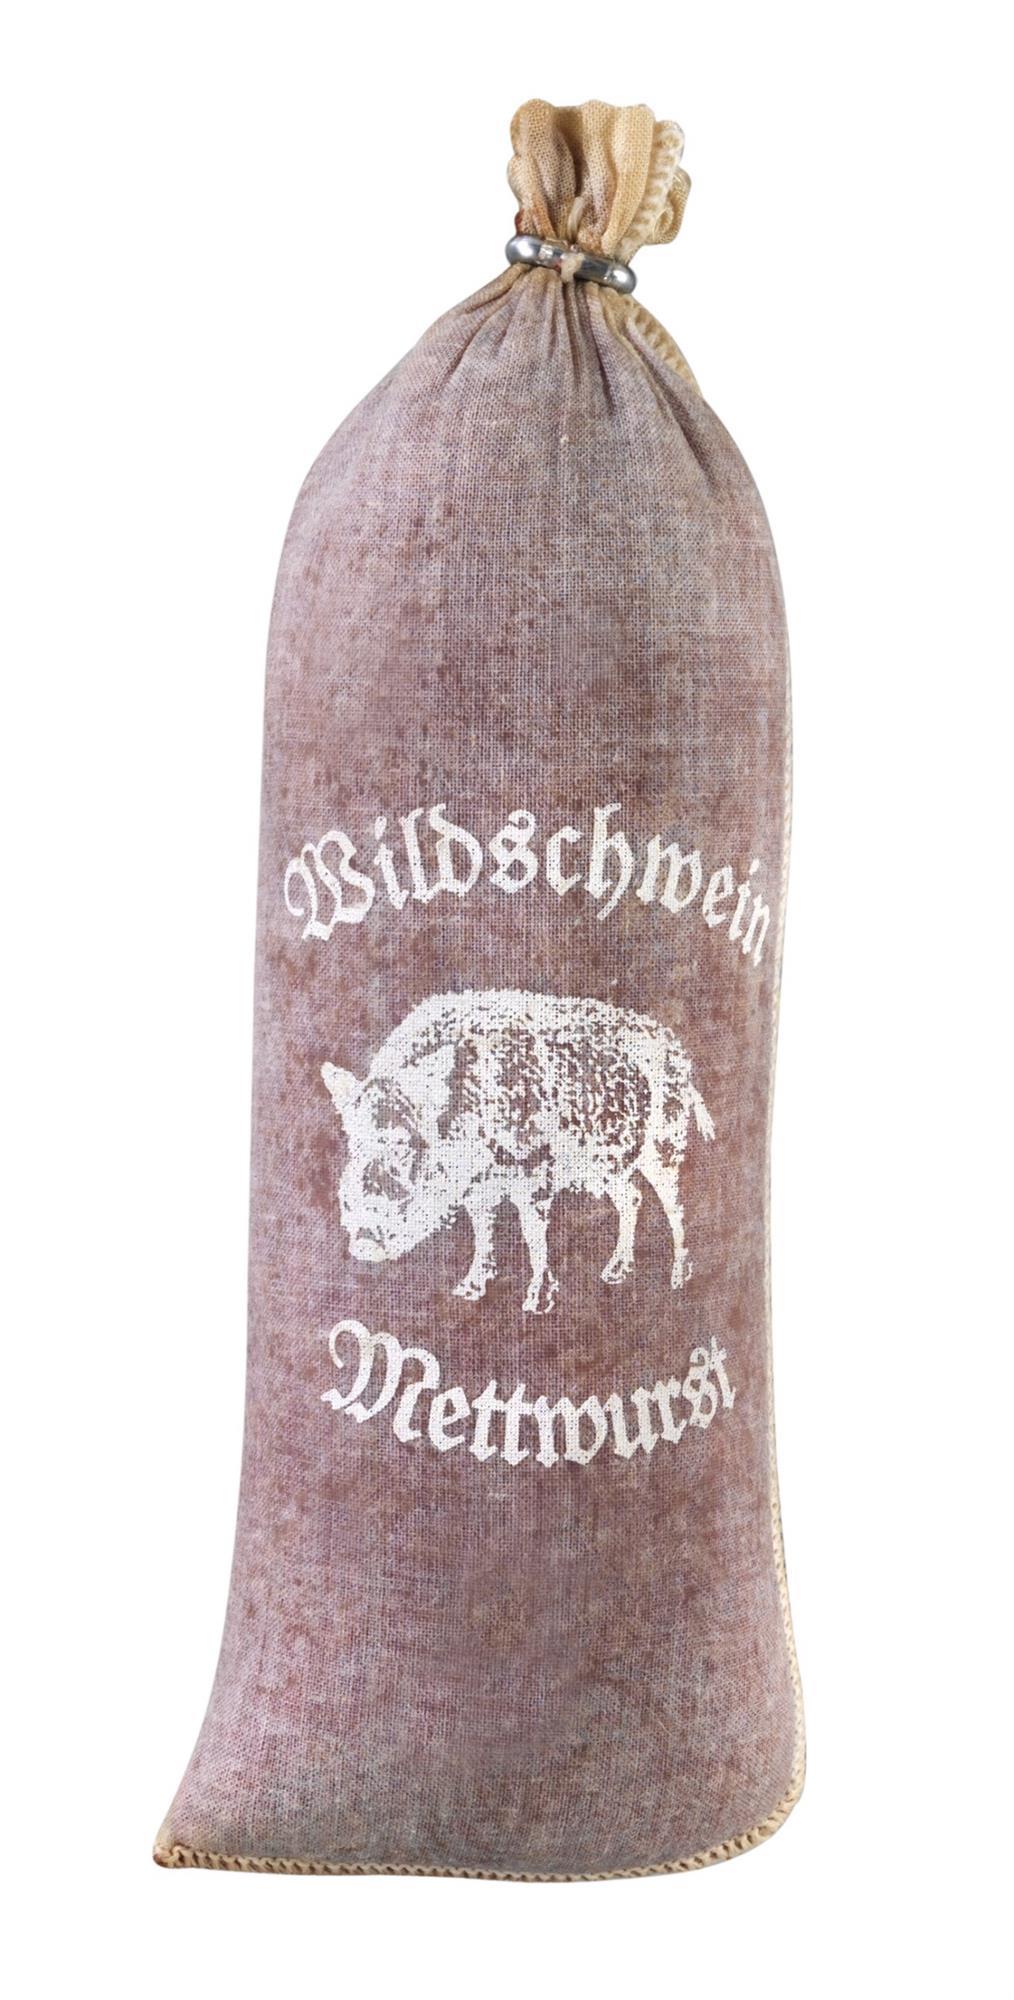 10 Stück Textildarm"Wildschwein-Mettwurst" Kaliber 60/25